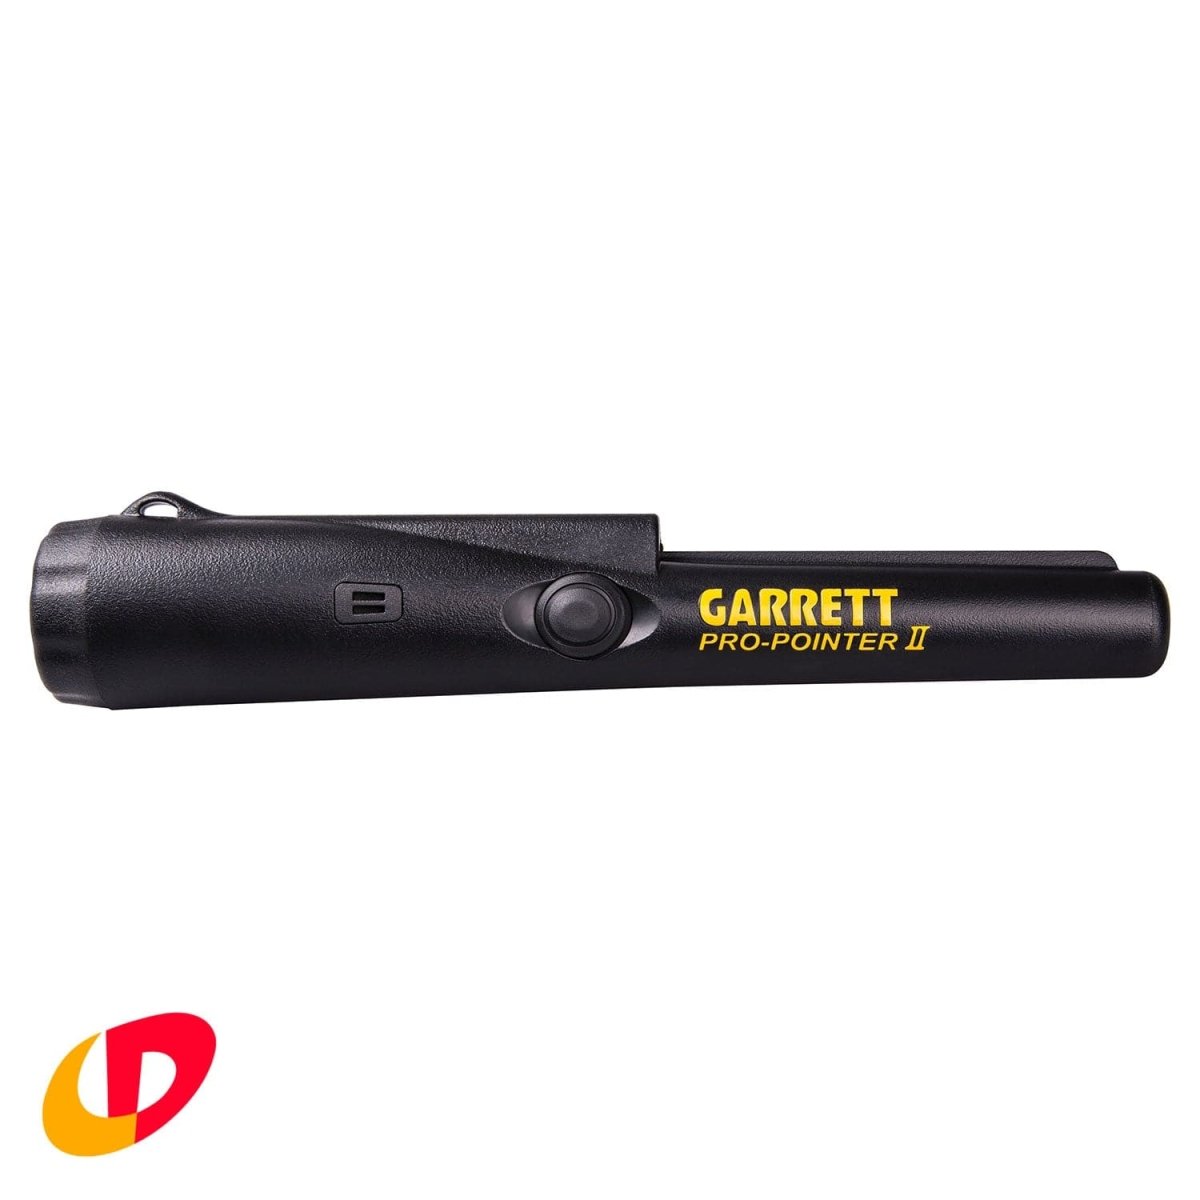 Garrett Pro-Pointer II - Crazy Detectors